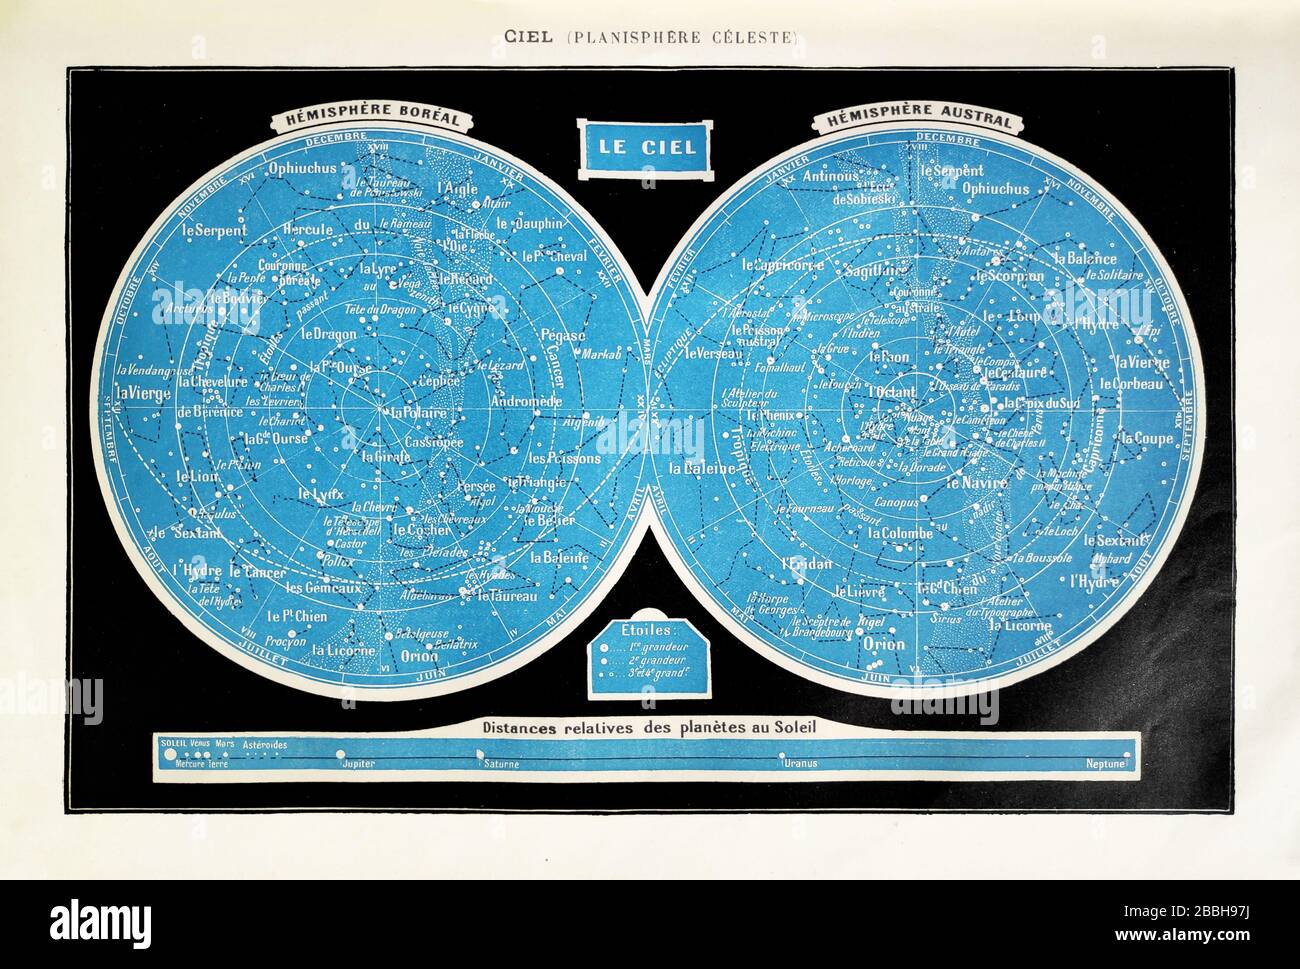 Ancienne illustration d'une planisphère céleste imprimée à la fin du XIXe siècle. Banque D'Images